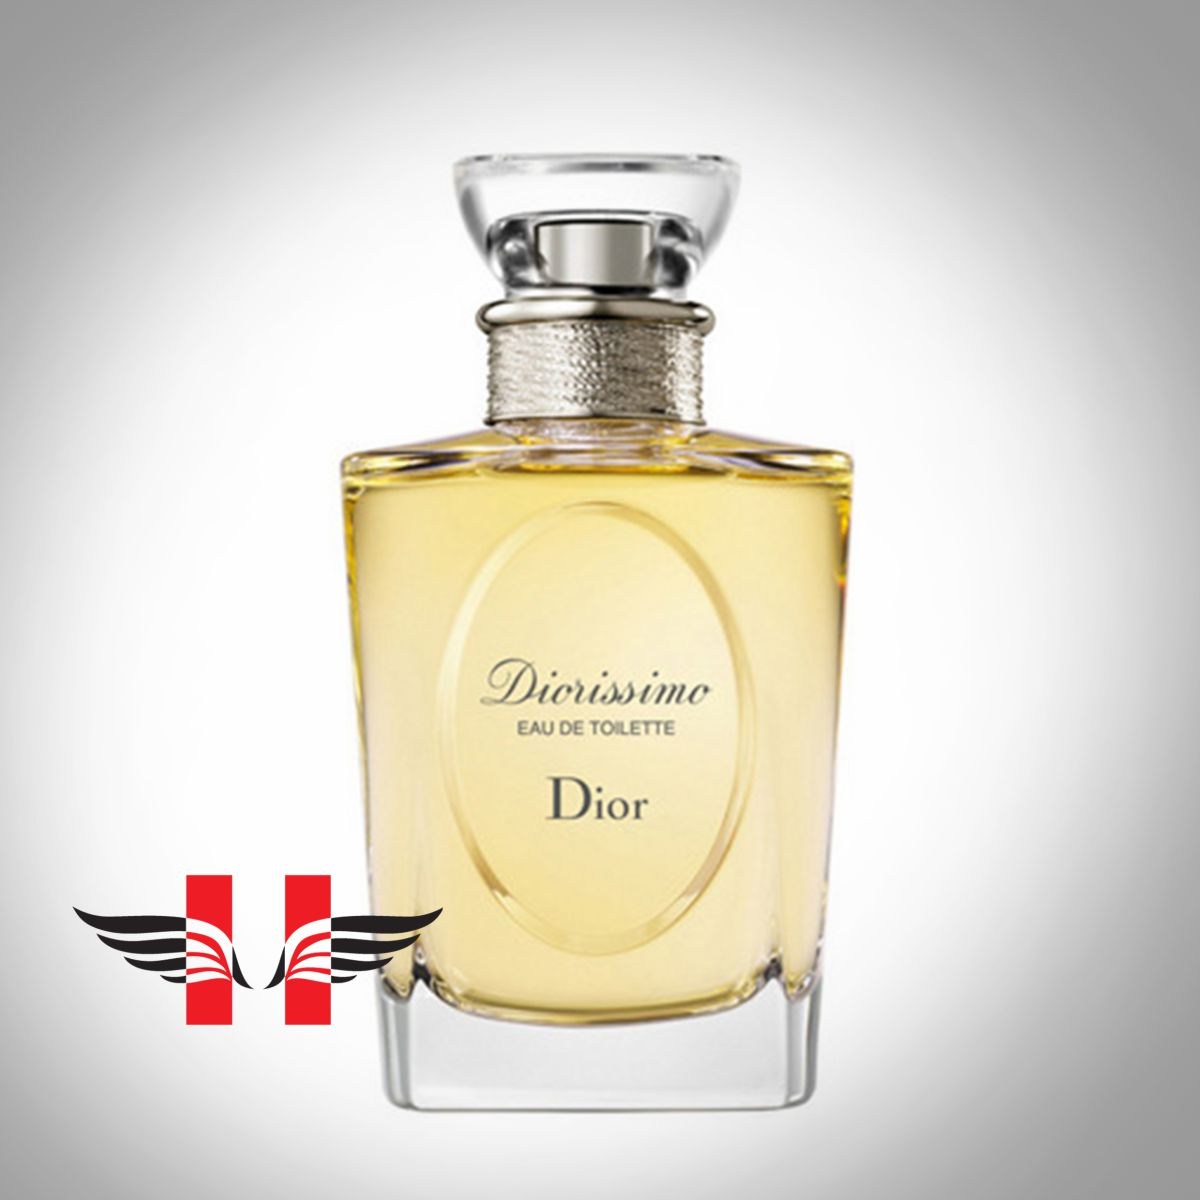 عطر ادکلن دیور دیوریسیمو | Dior Diorissimo EDT